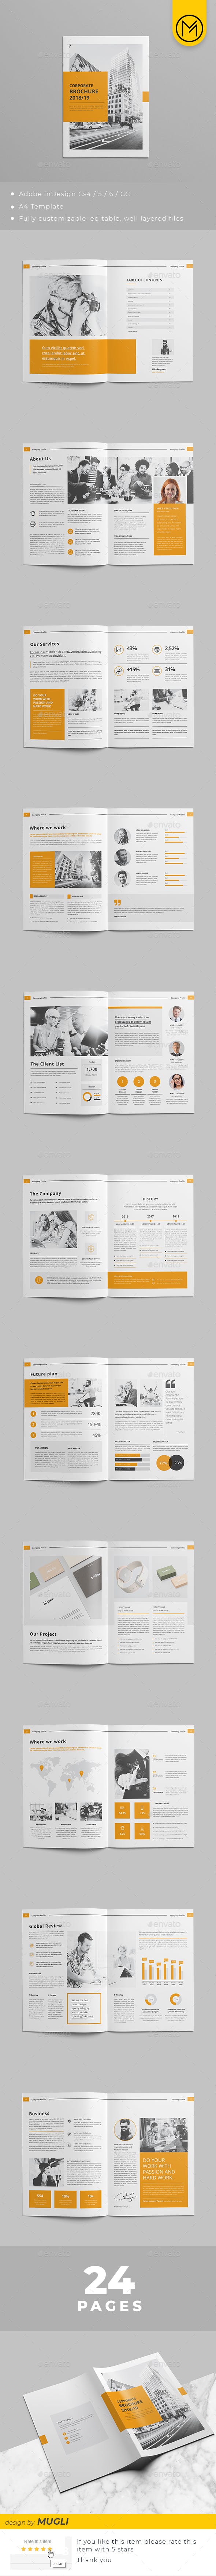 创意公司提案InDesign模板杂志宣传册设计插图